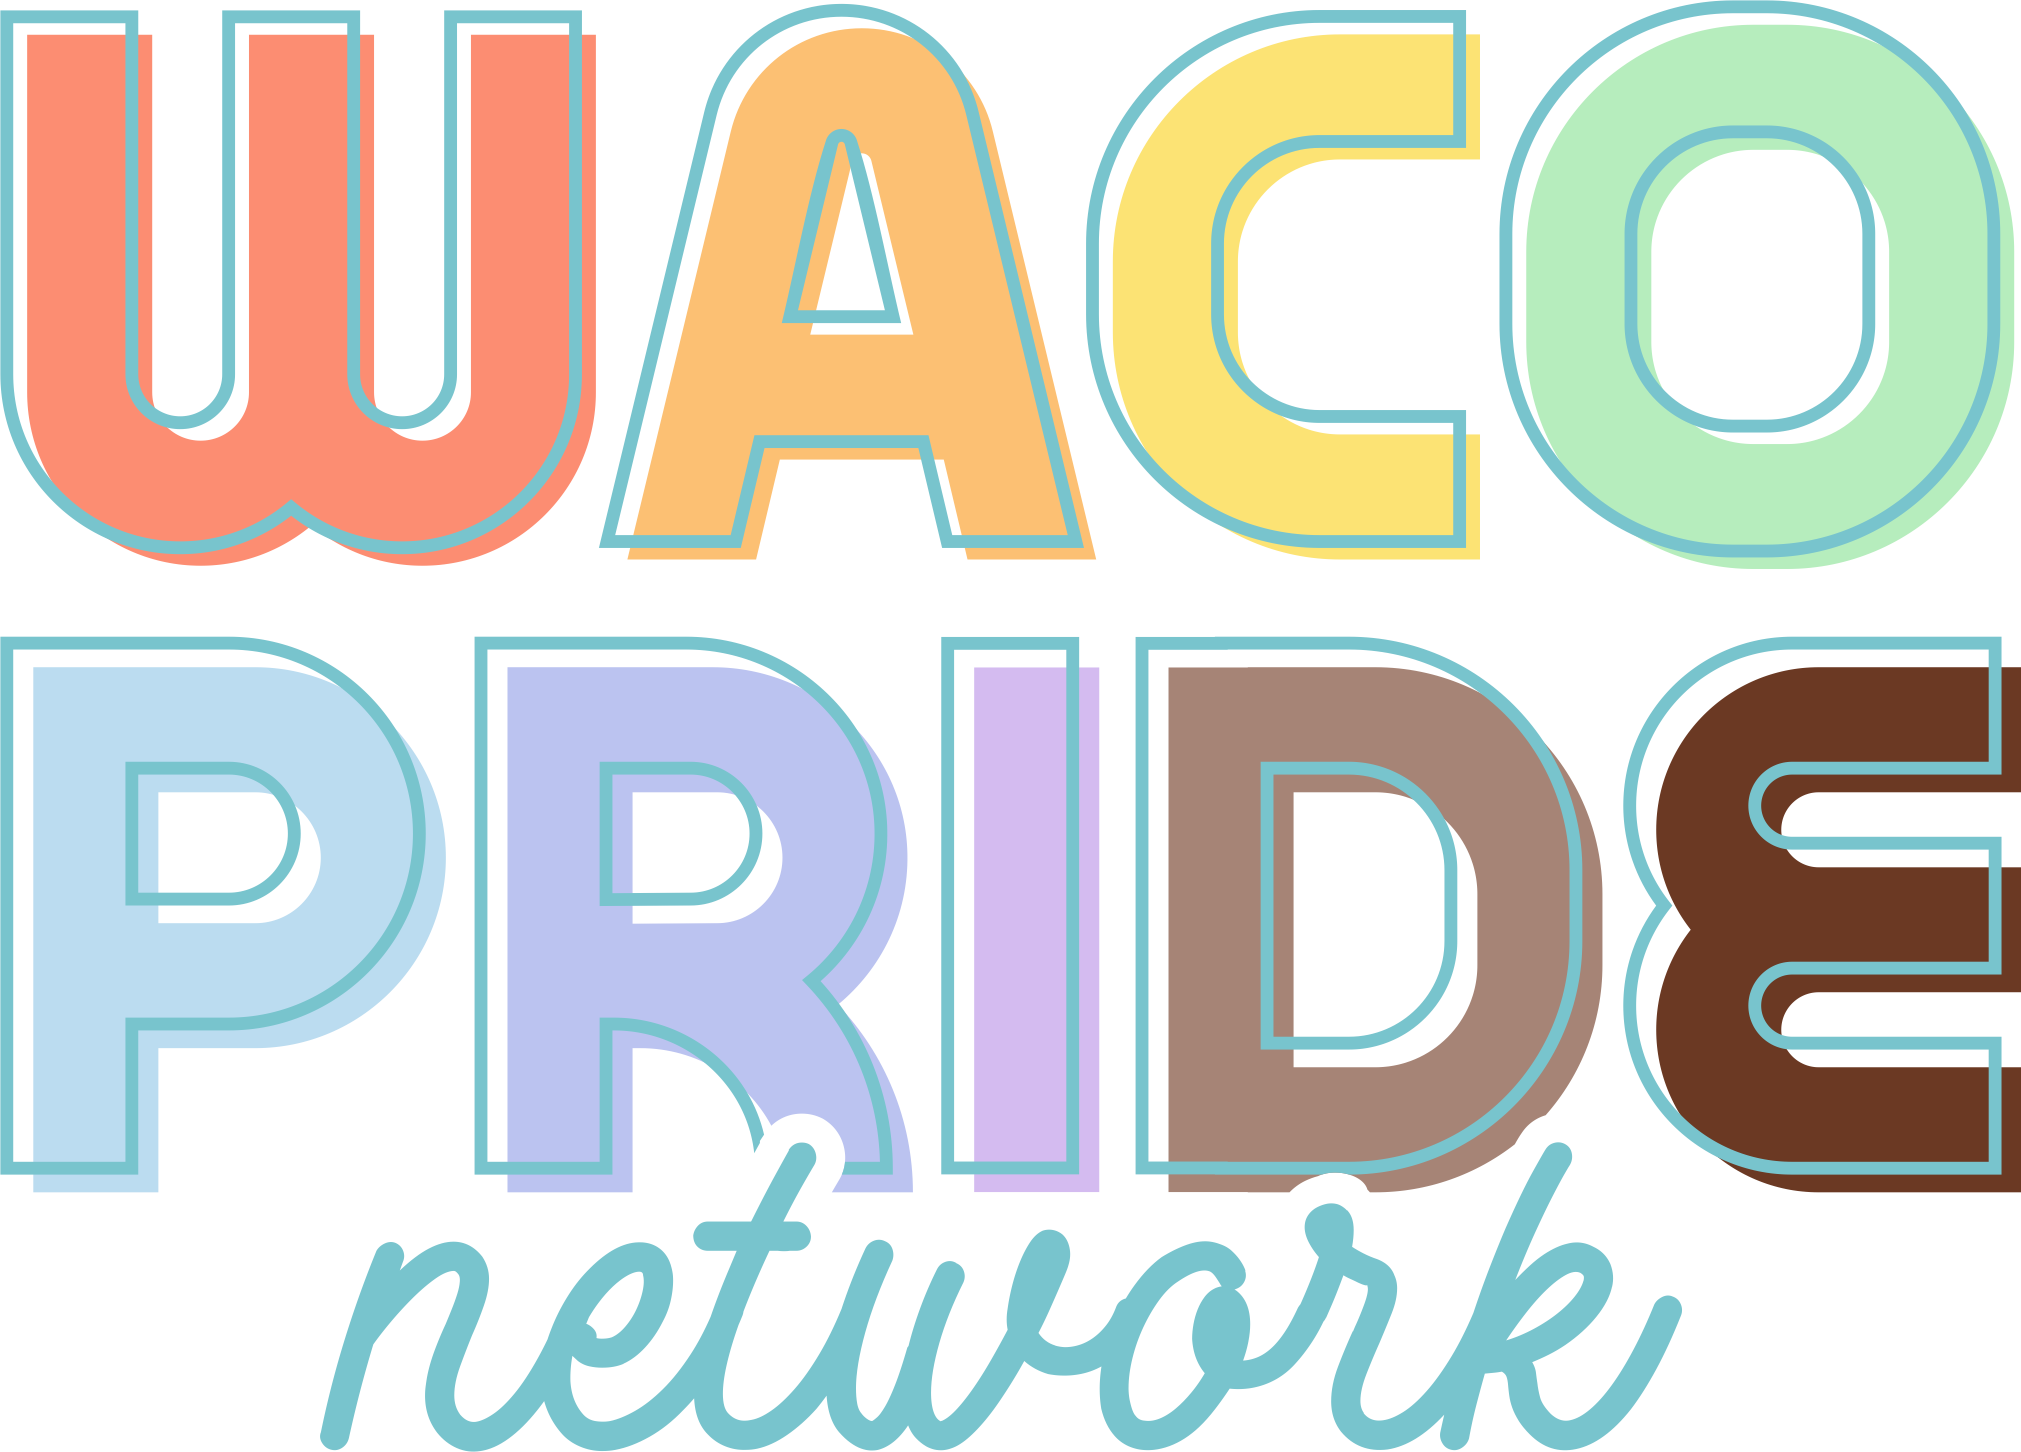 Waco Pride Network